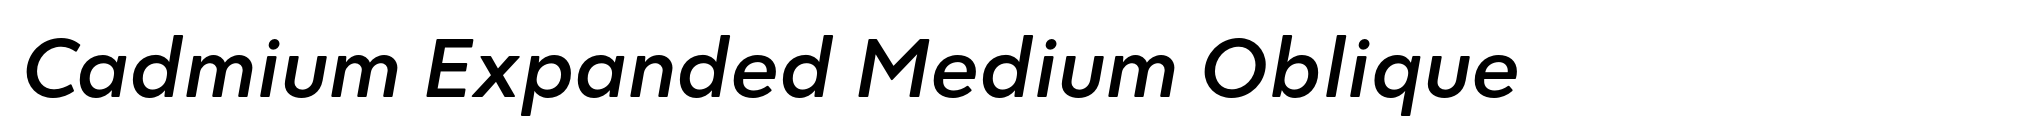 Cadmium Expanded Medium Oblique image